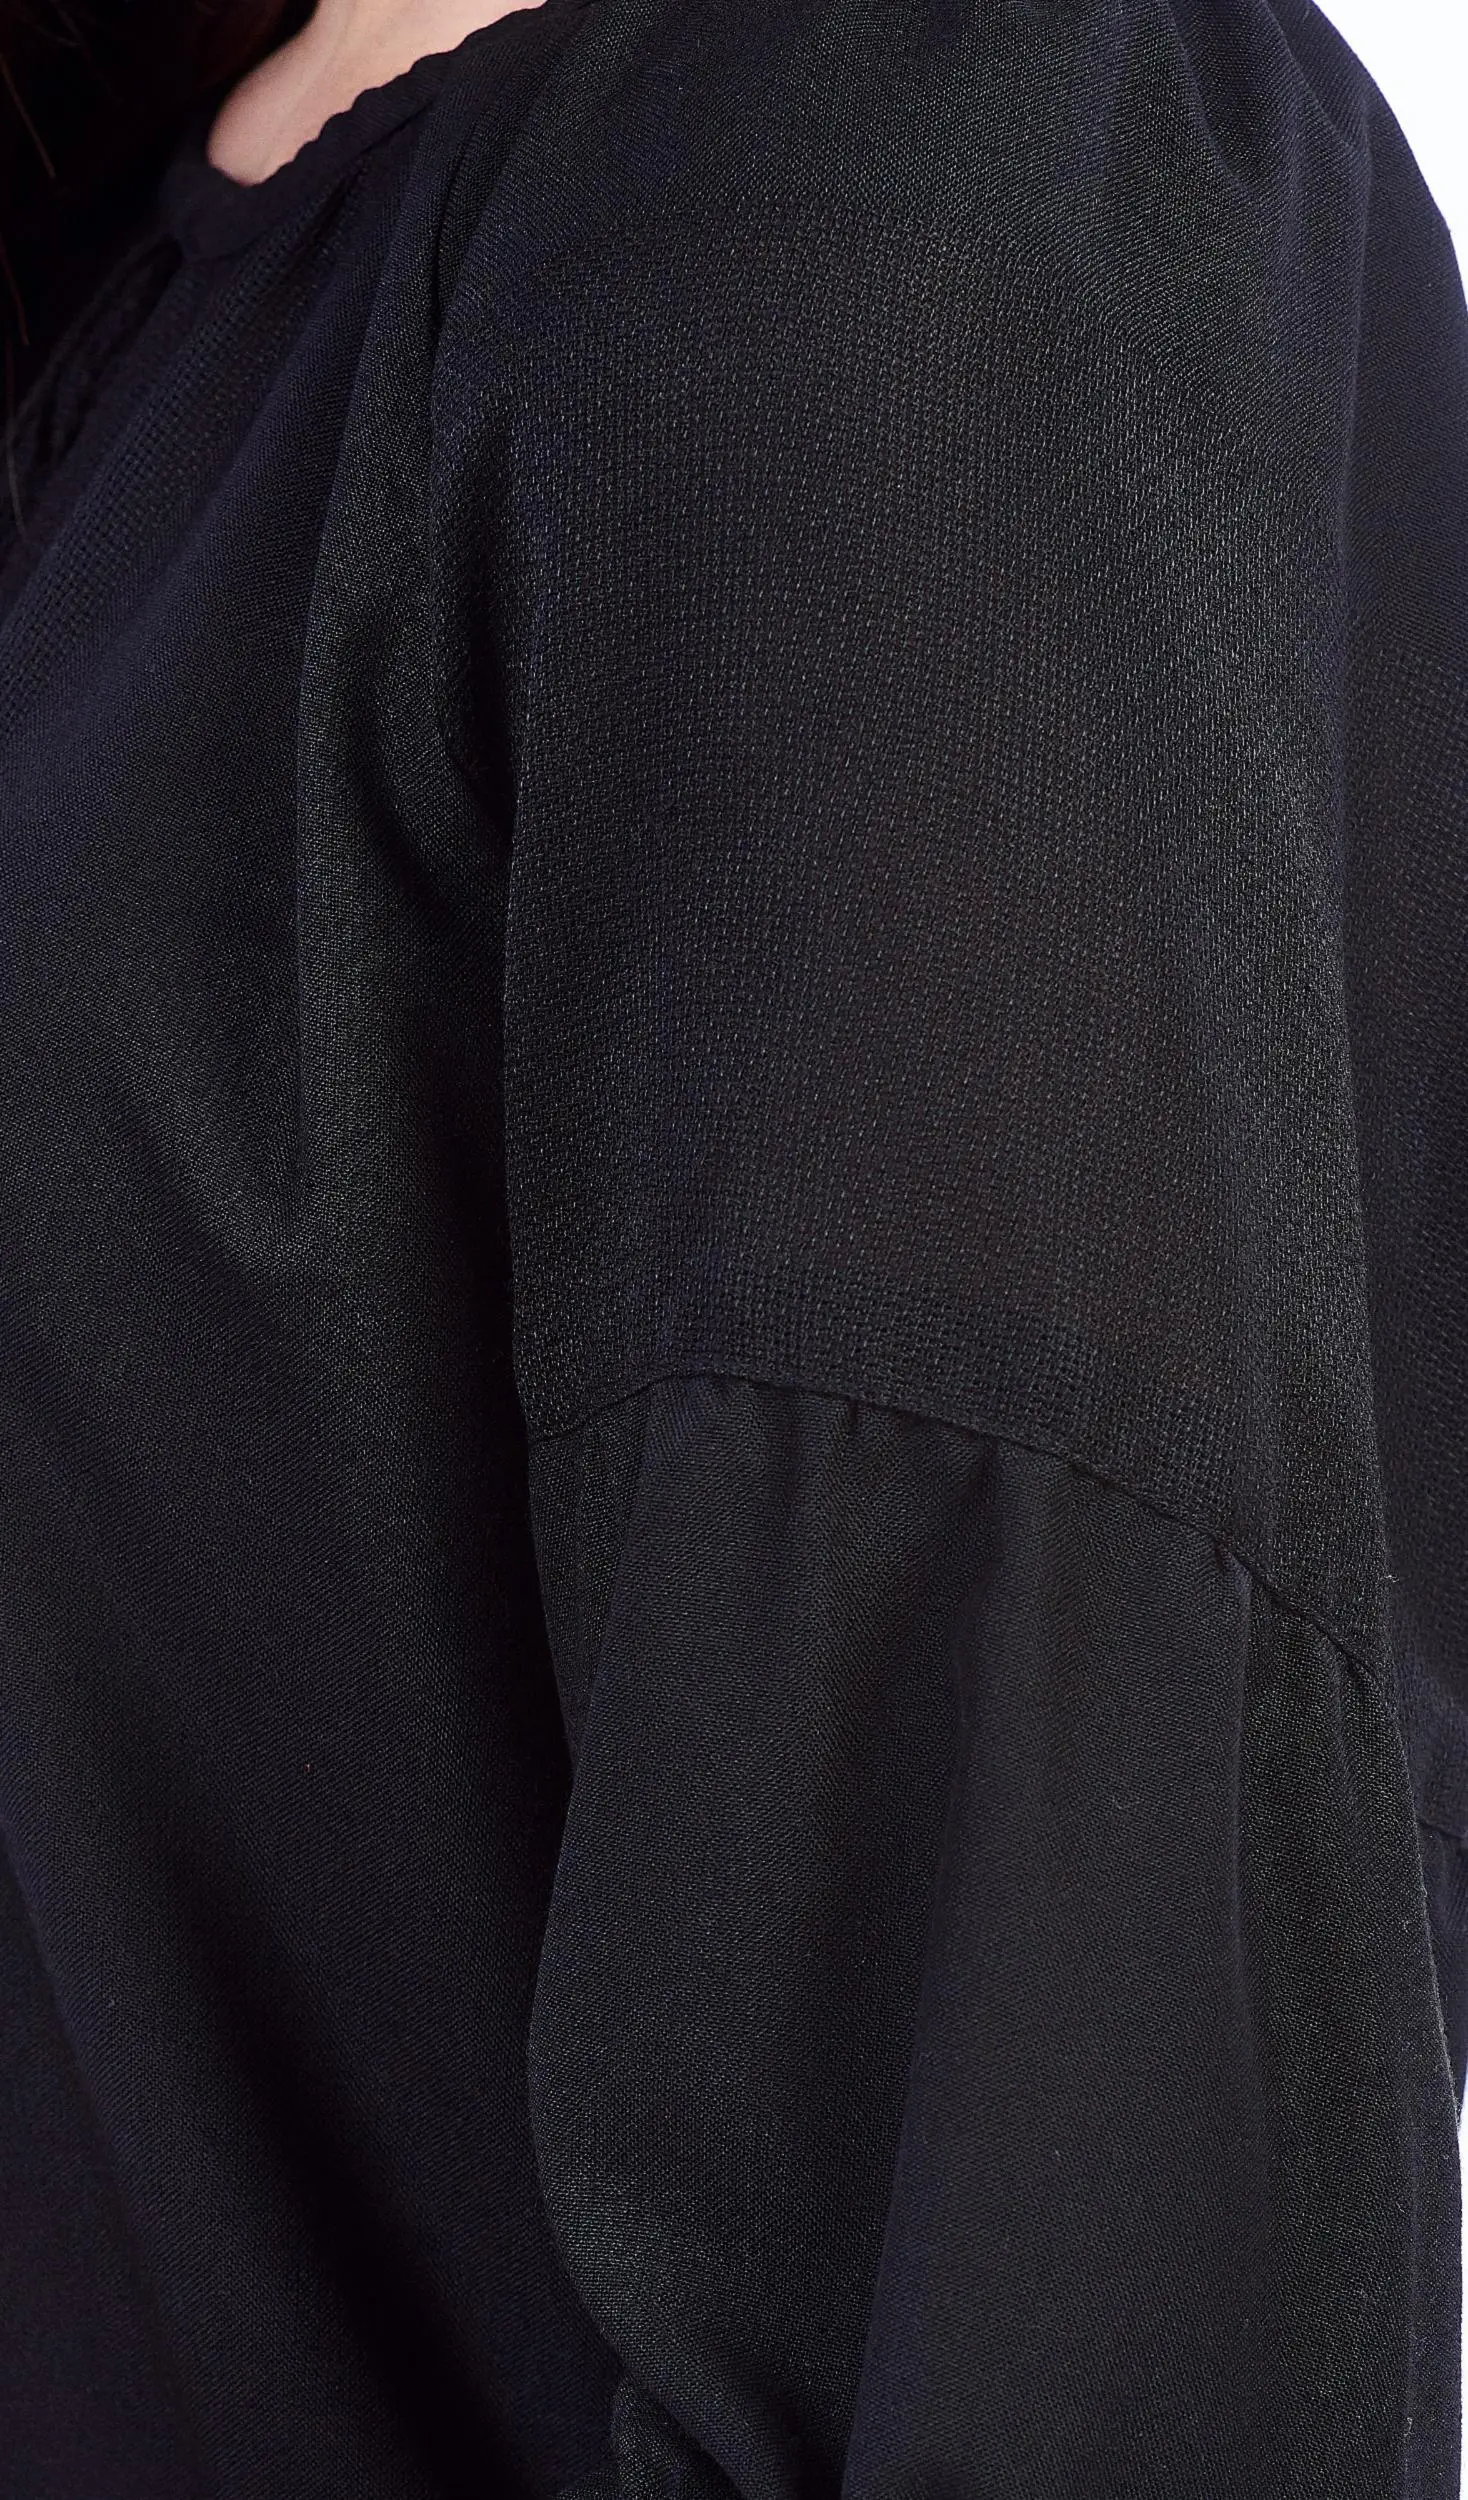 ТПК-172 03-02/09 Сорочка жіноча під вишивку, чорна, 3/4 рукав, розмір 50